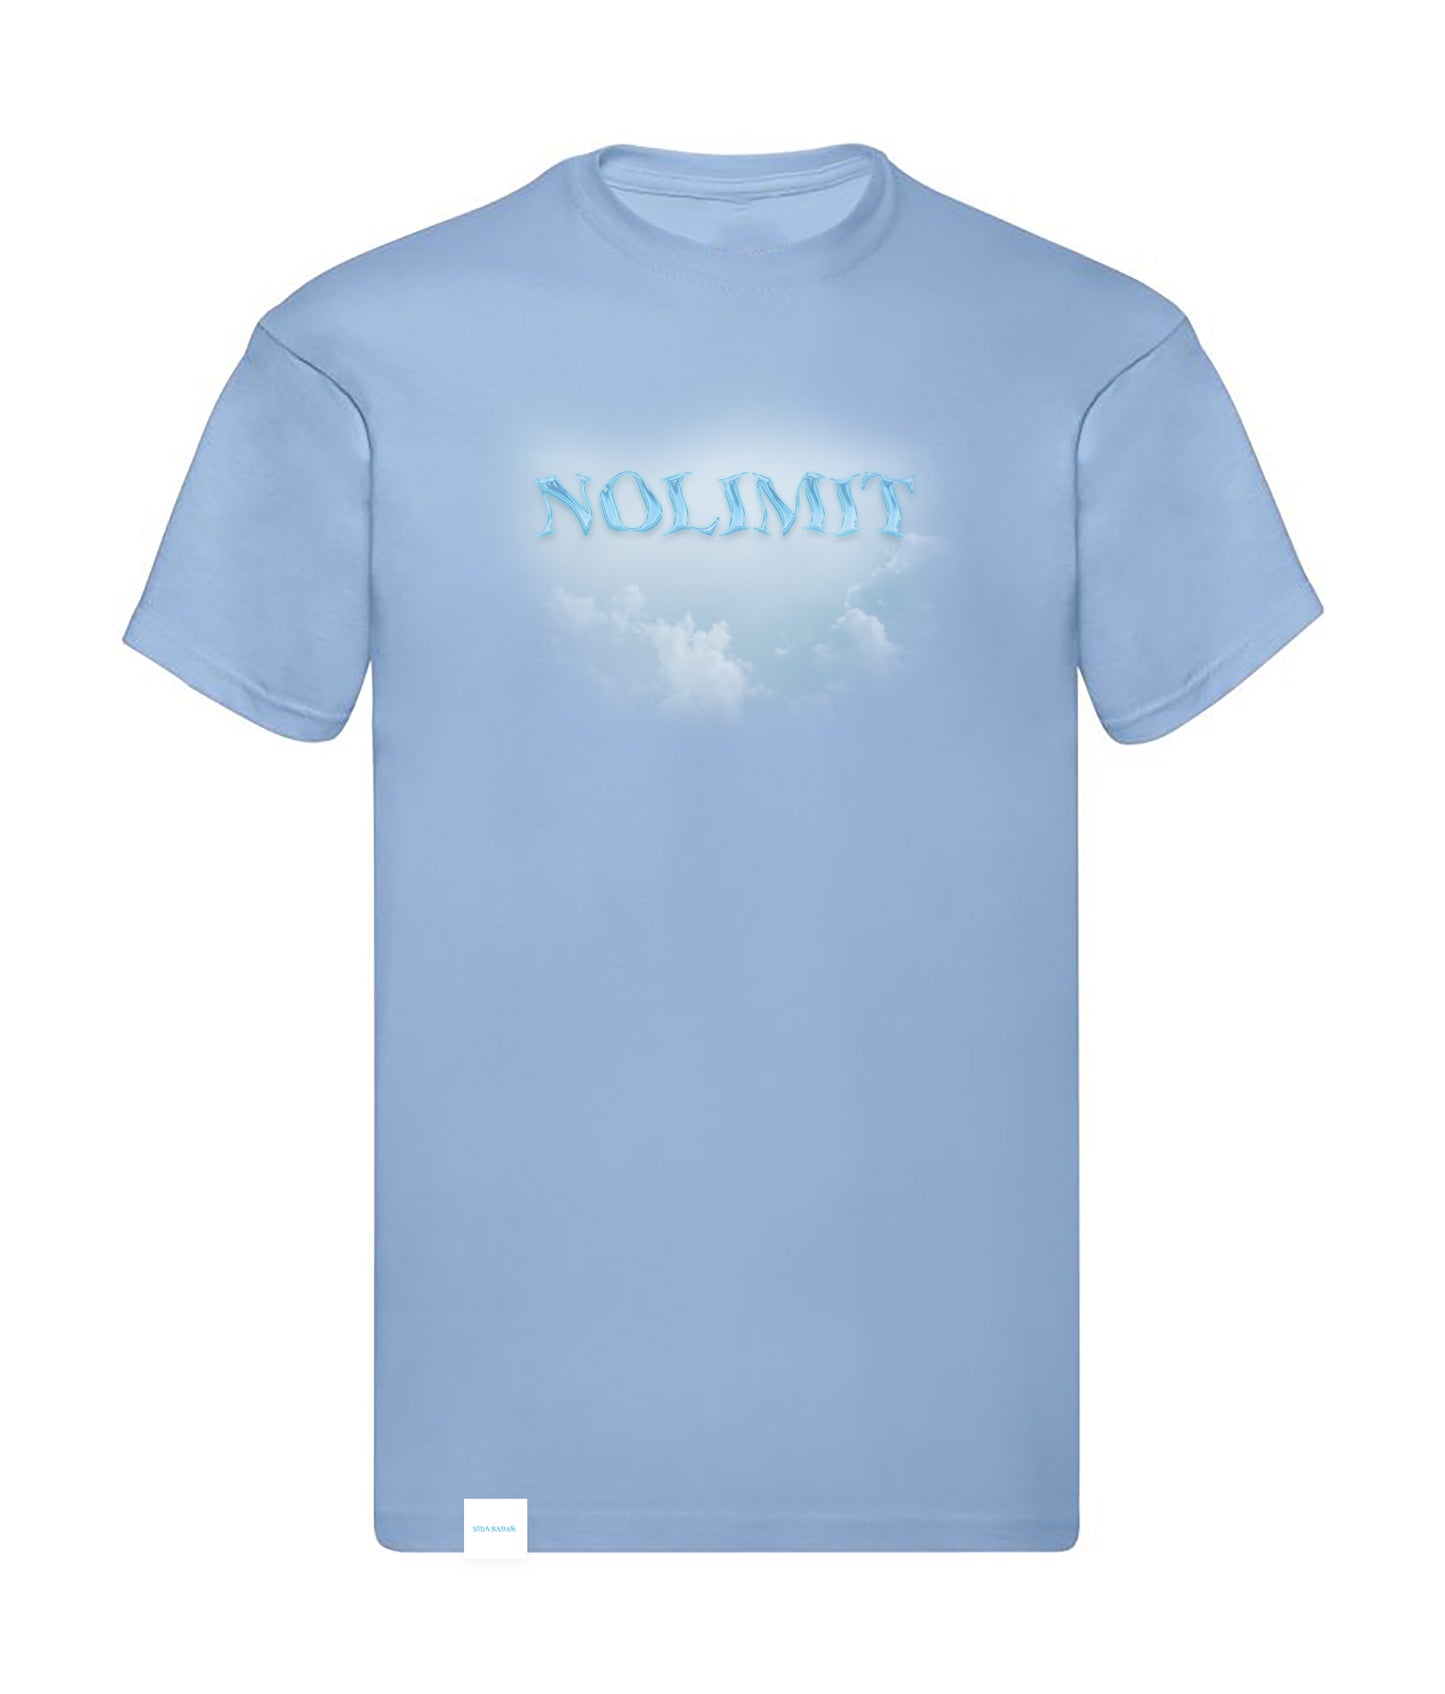 Tričko “NOLIMIT” + ZADARMO CD “NOLIMIT” (s podpisom)